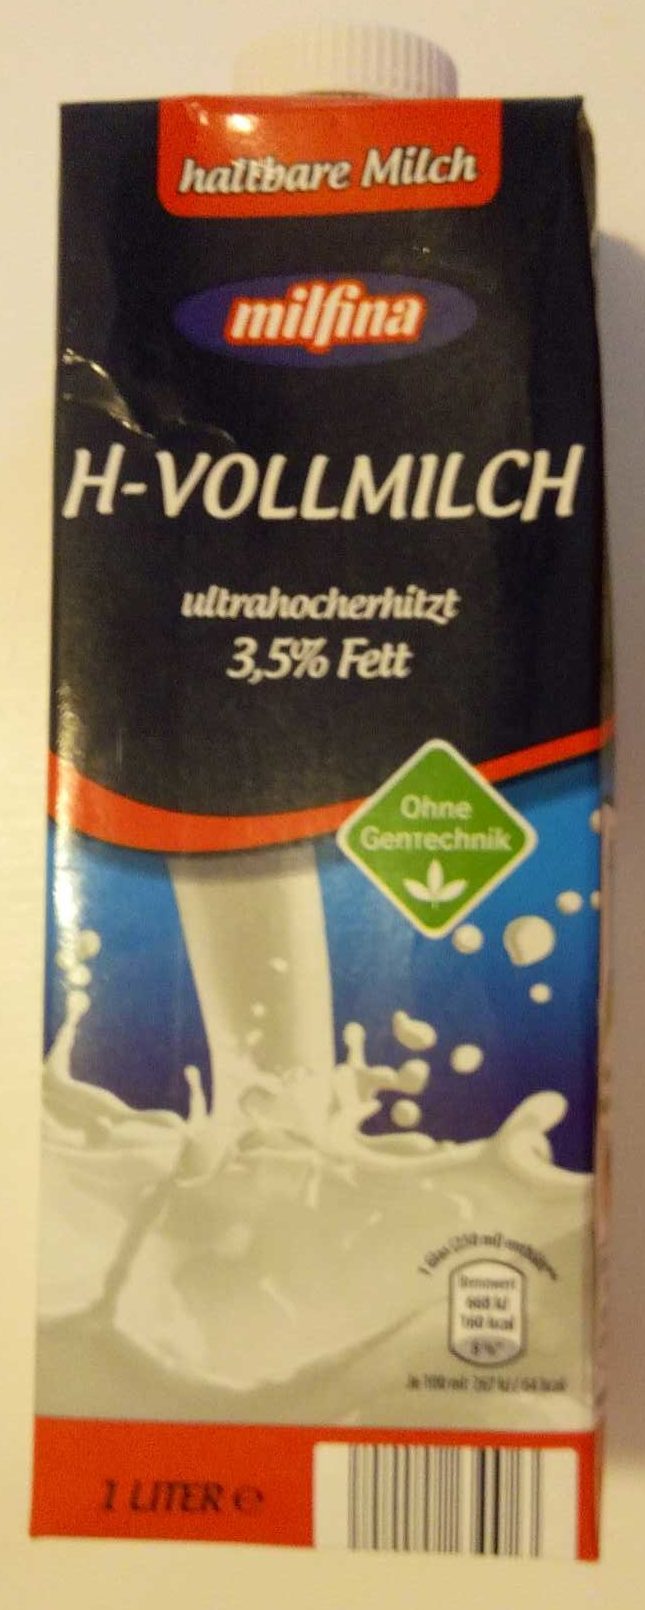 H-Vollmilch 3,5% - Produkt